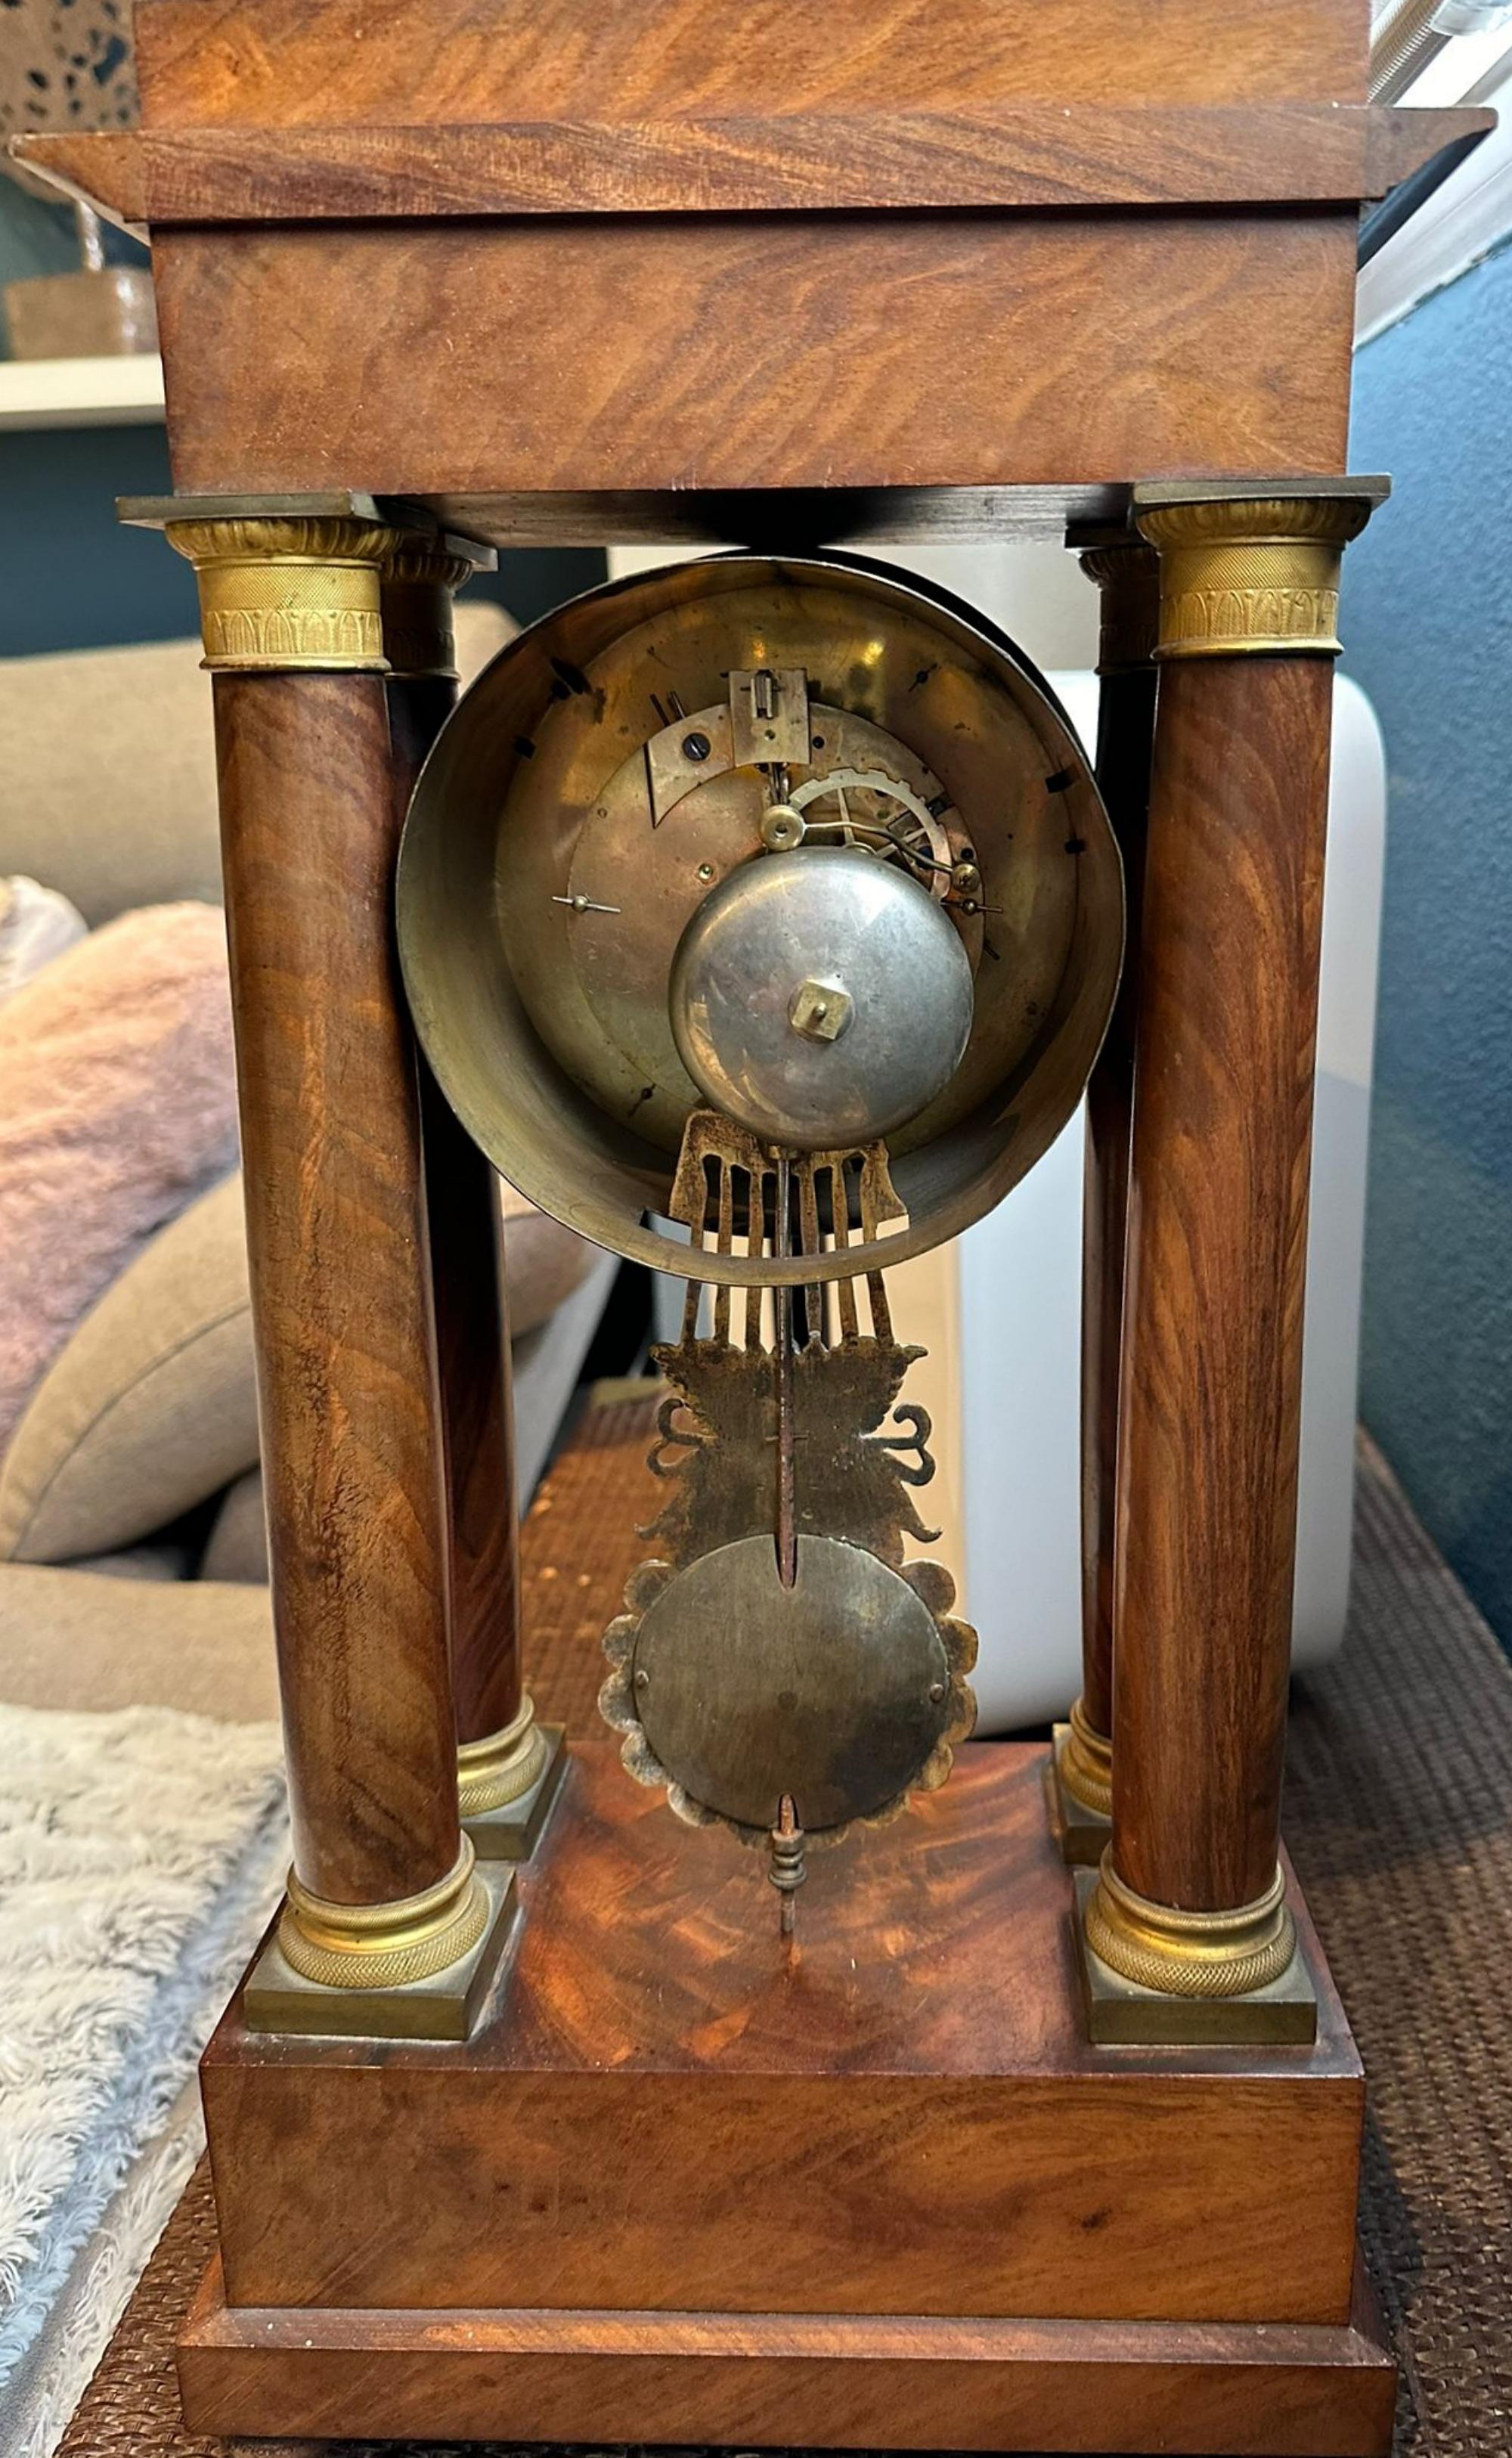 Außergewöhnliche Napoleon III.-Uhr Empire Französisch 19. Jahrhundert
50cm x 26cm x 15cm
guter Zustand
